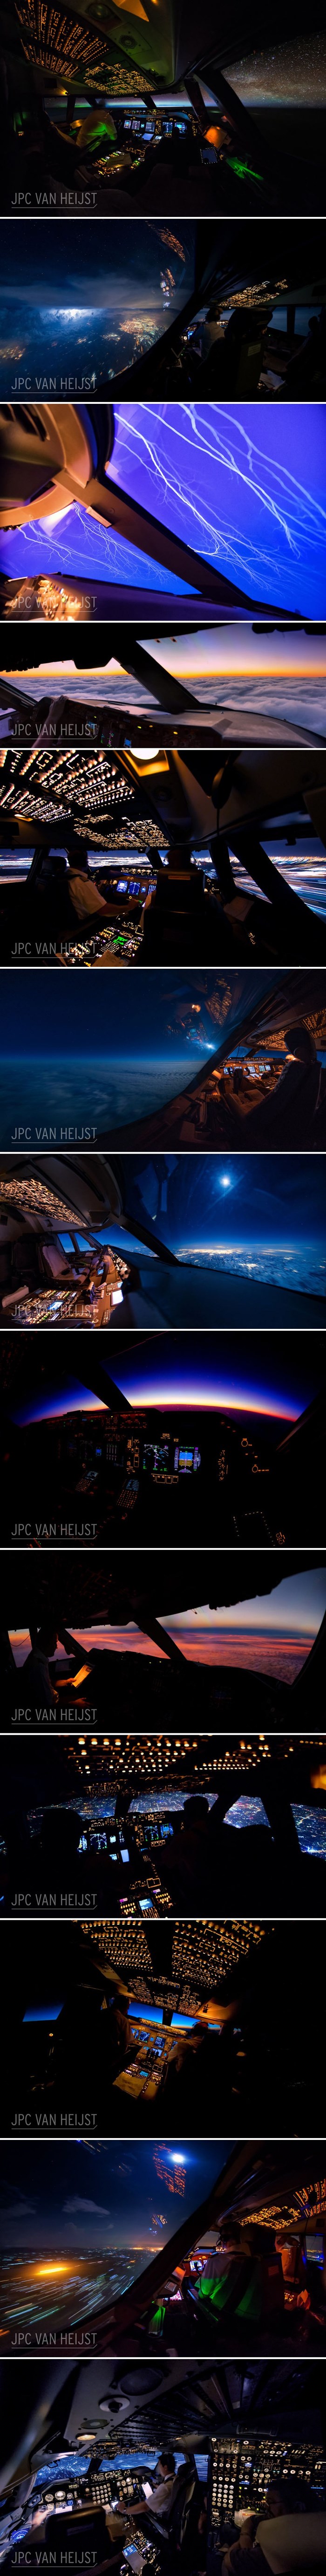 Pilot putničkog zrakoplova je napravio impresivne noćne fotke i dokazao da imaju pogled na jedan sasvim drugi svijet